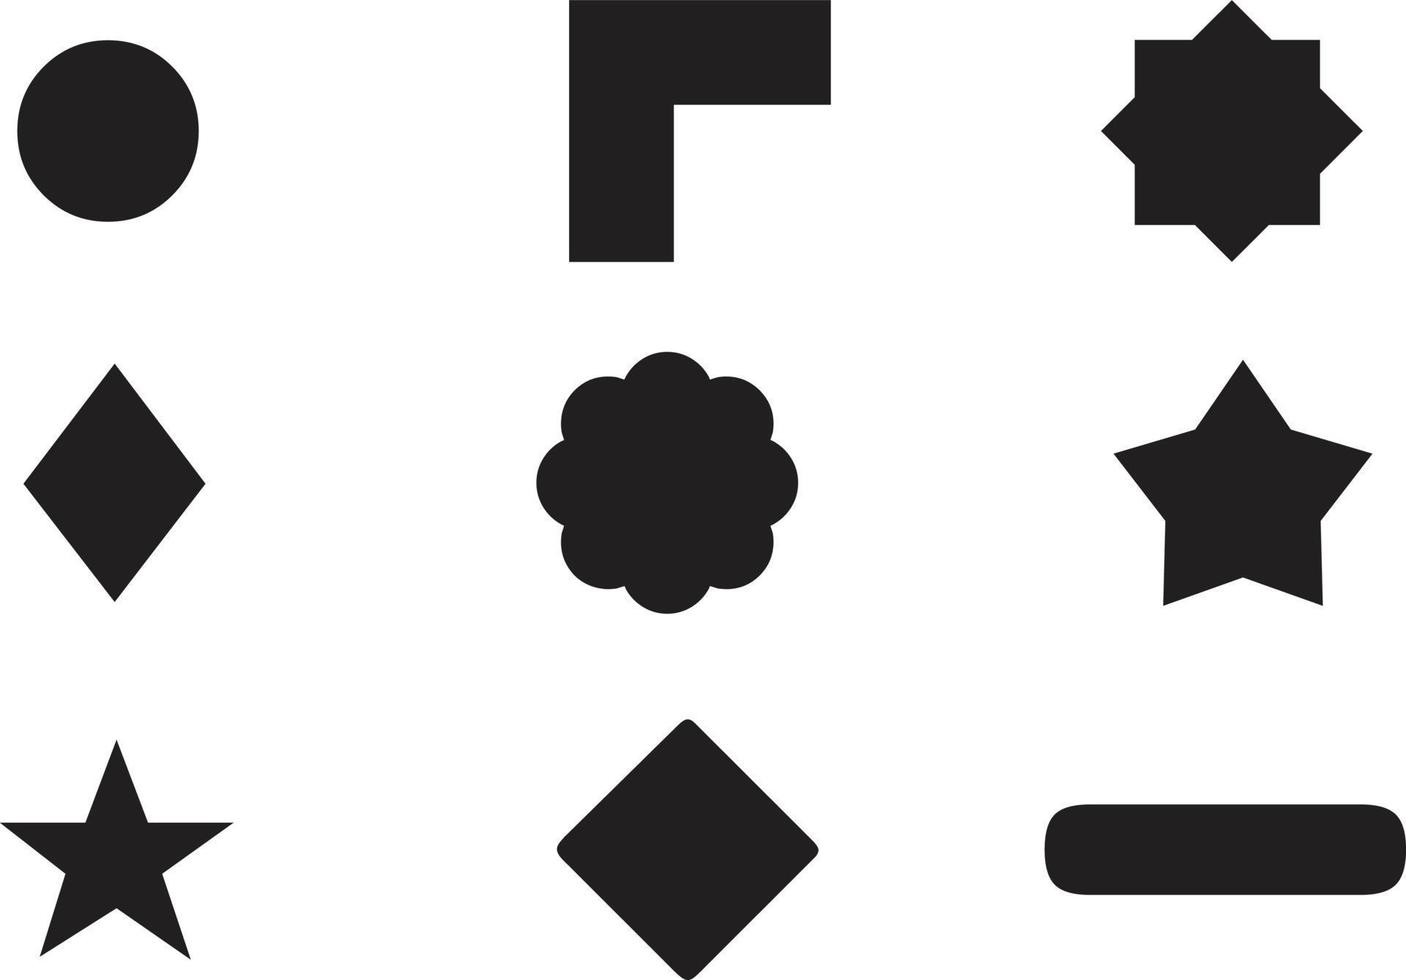 geometrische Formen schwarze Silhouette Icon-Set. umriss cartoon abstrakte leere vorlage für sprechblase, nachrichtenballon, textnotizabzeichen, preisschild, papierspeicheraufkleber, denken sie wolkenrahmen, webbanner vektor